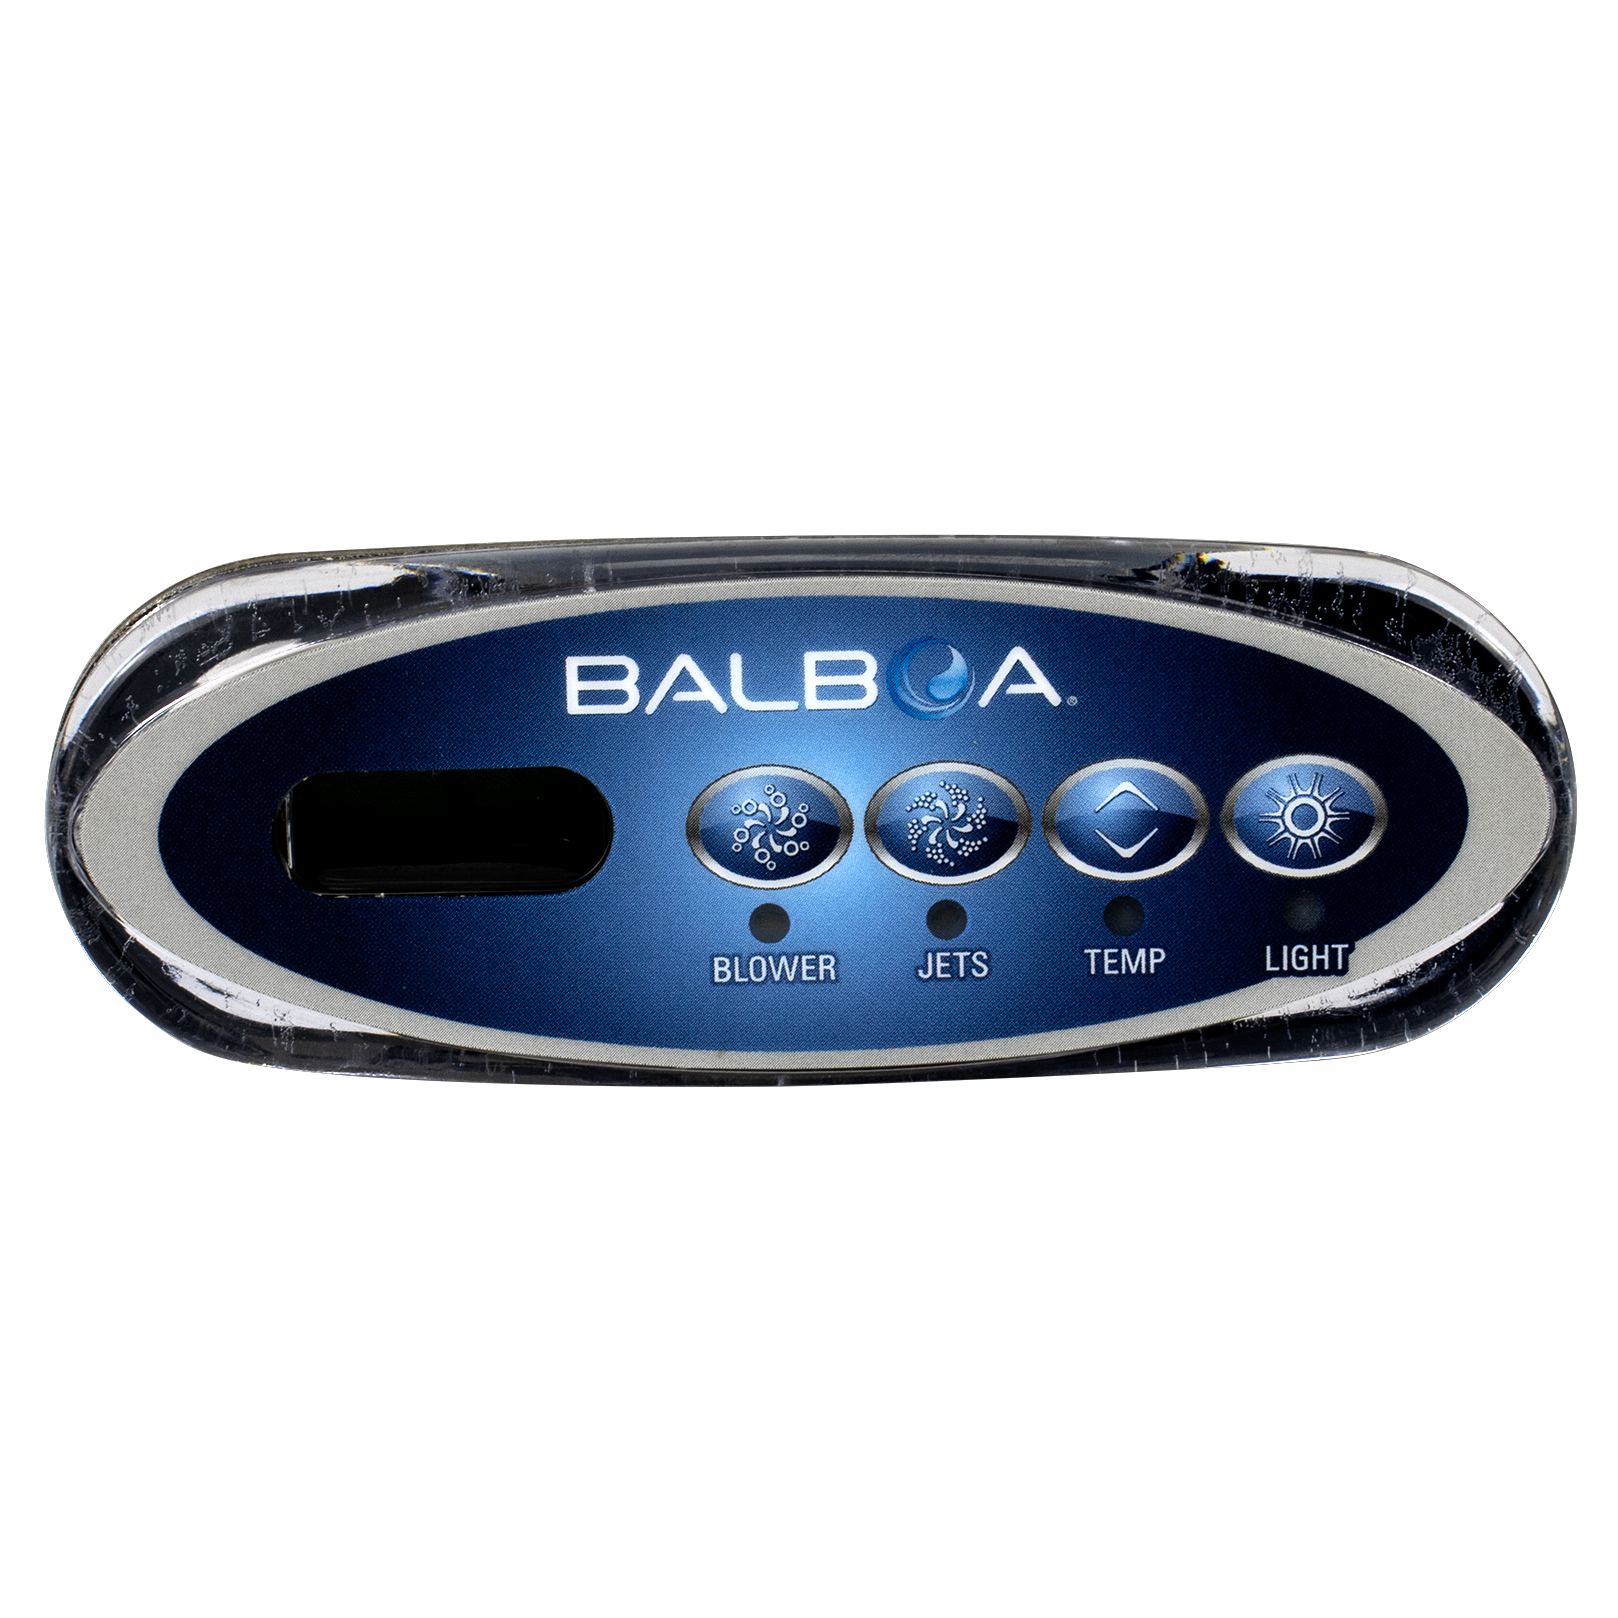 VL200 Balboa Spa Controller